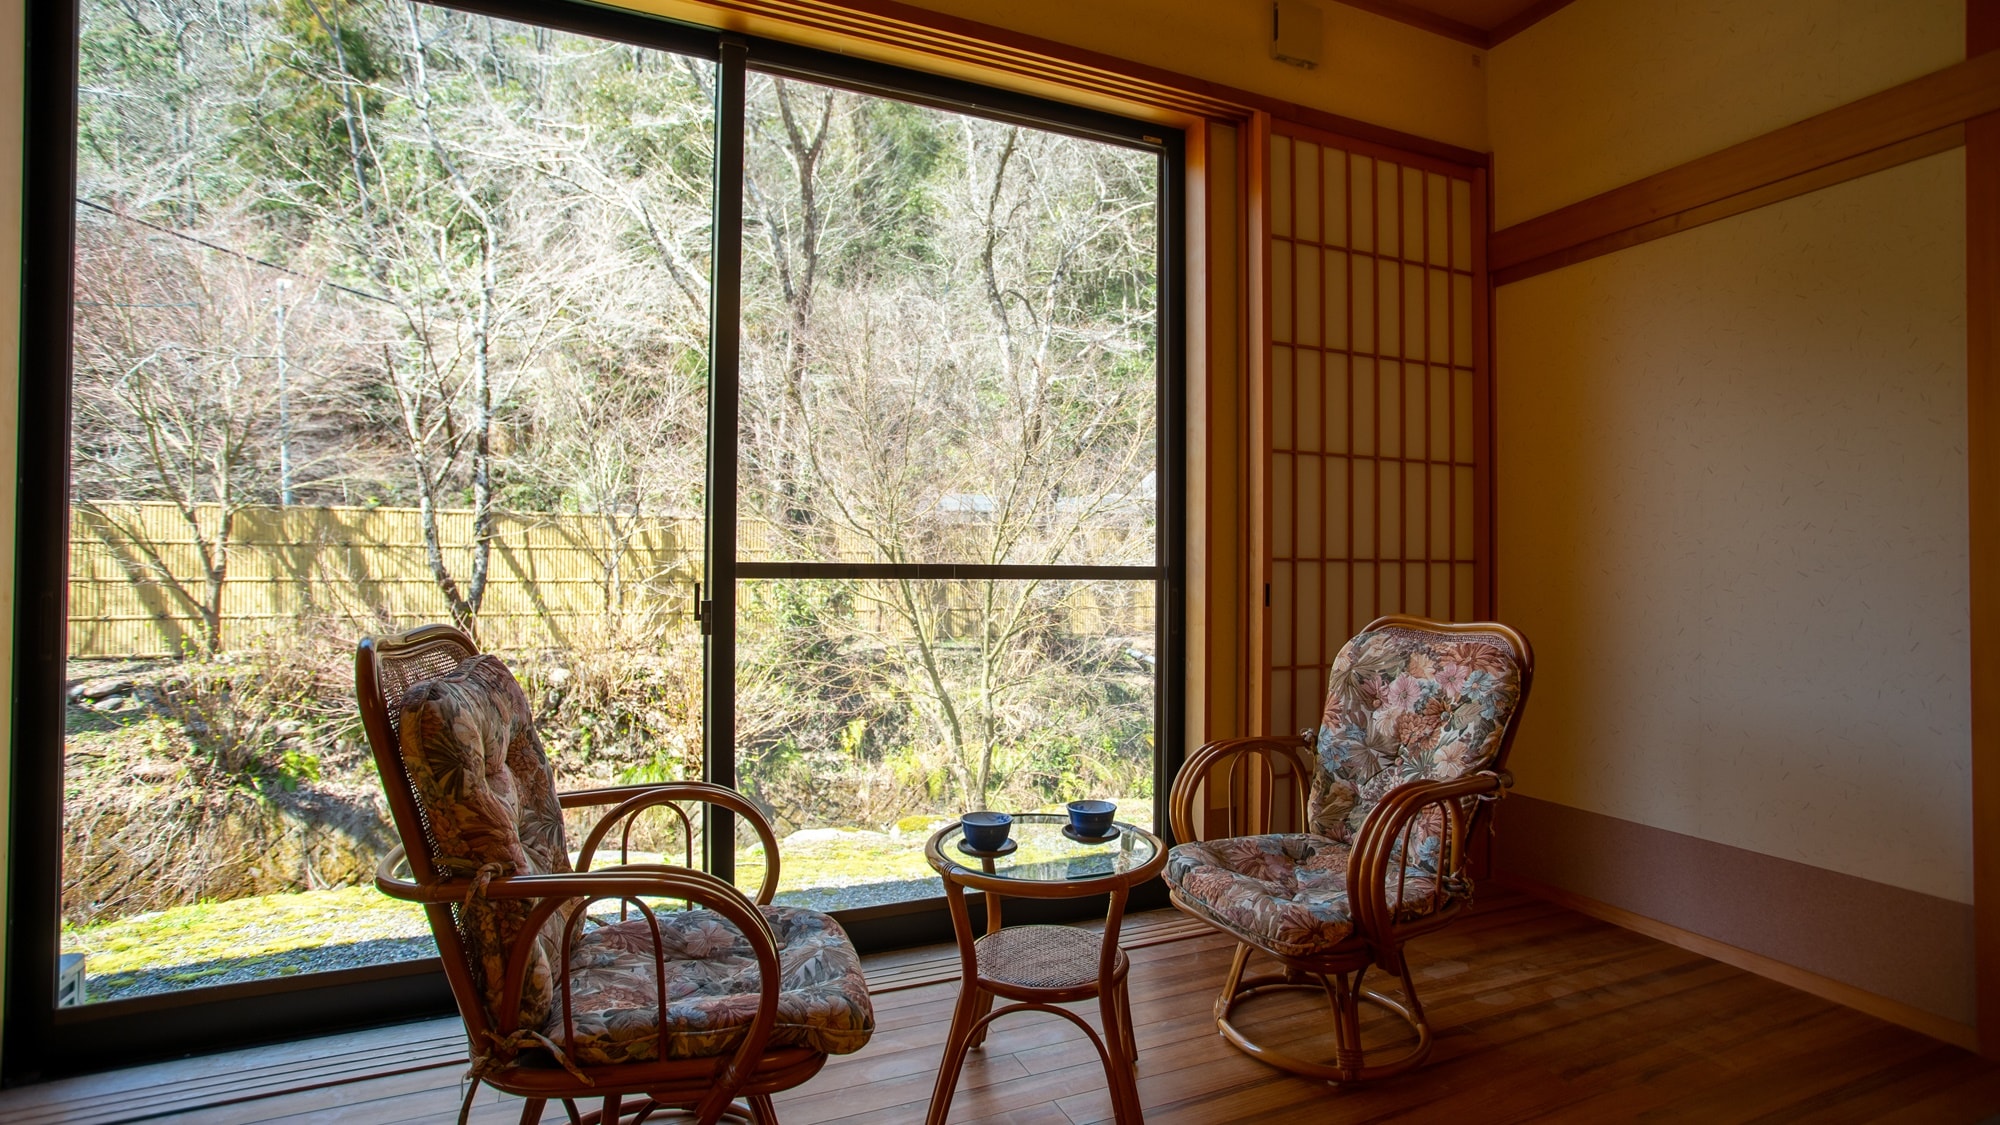 * Kamar bergaya Jepang 10 tikar tatami (contoh) Anda dapat menghabiskan waktu bersantai dengan pemandangan